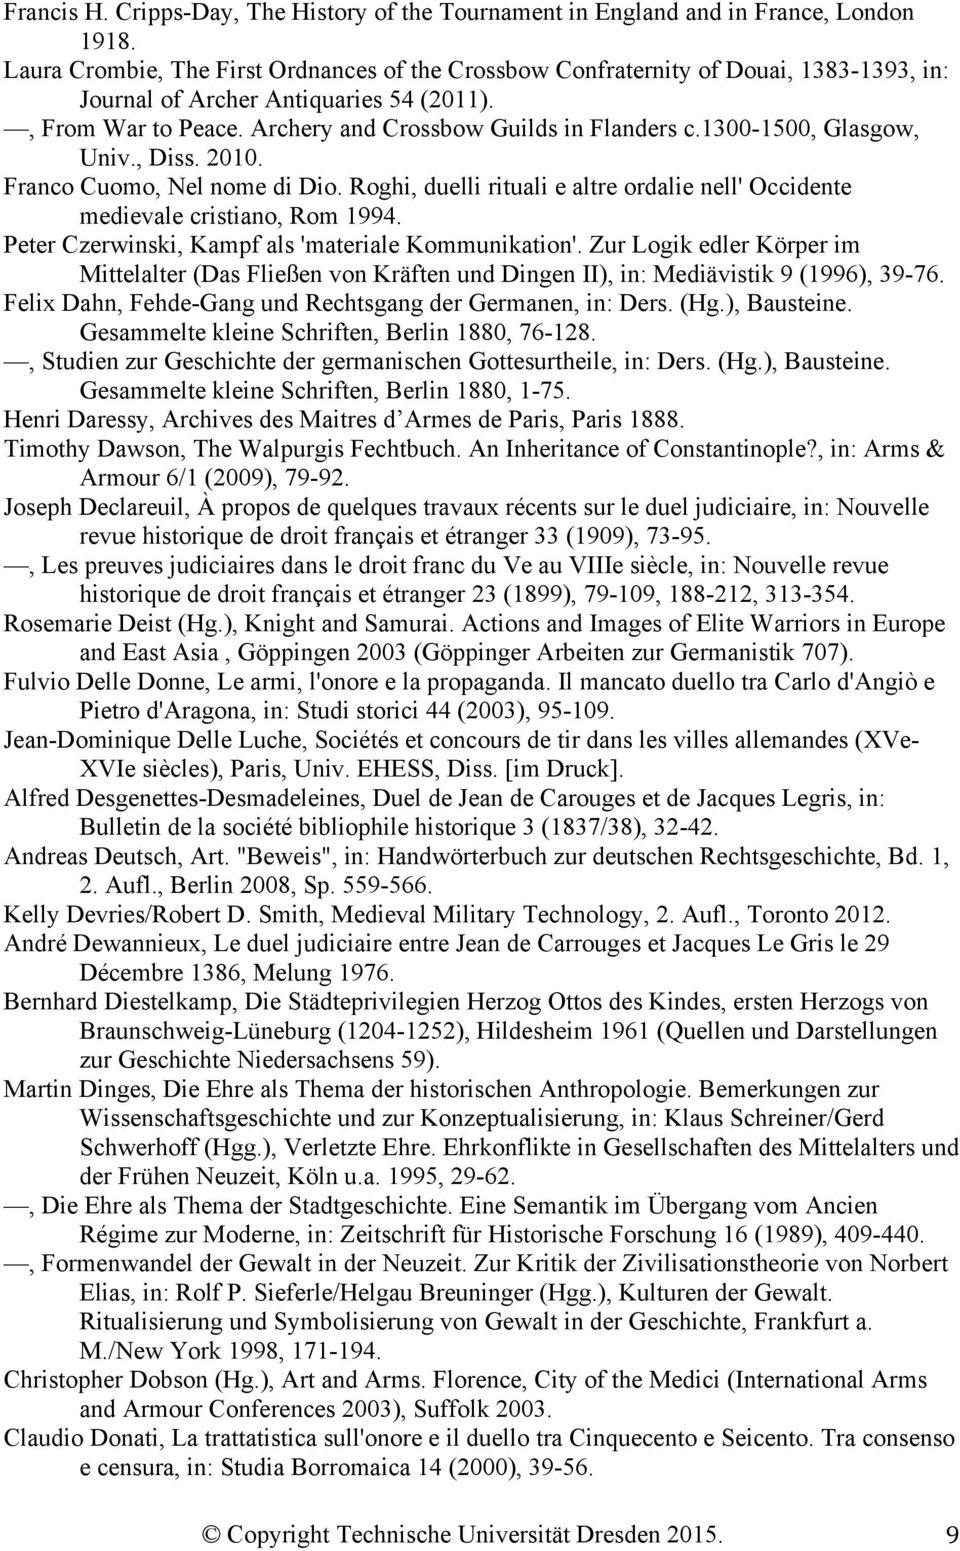 1300-1500, Glasgow, Univ., Diss. 2010. Franco Cuomo, Nel nome di Dio. Roghi, duelli rituali e altre ordalie nell' Occidente medievale cristiano, Rom 1994.